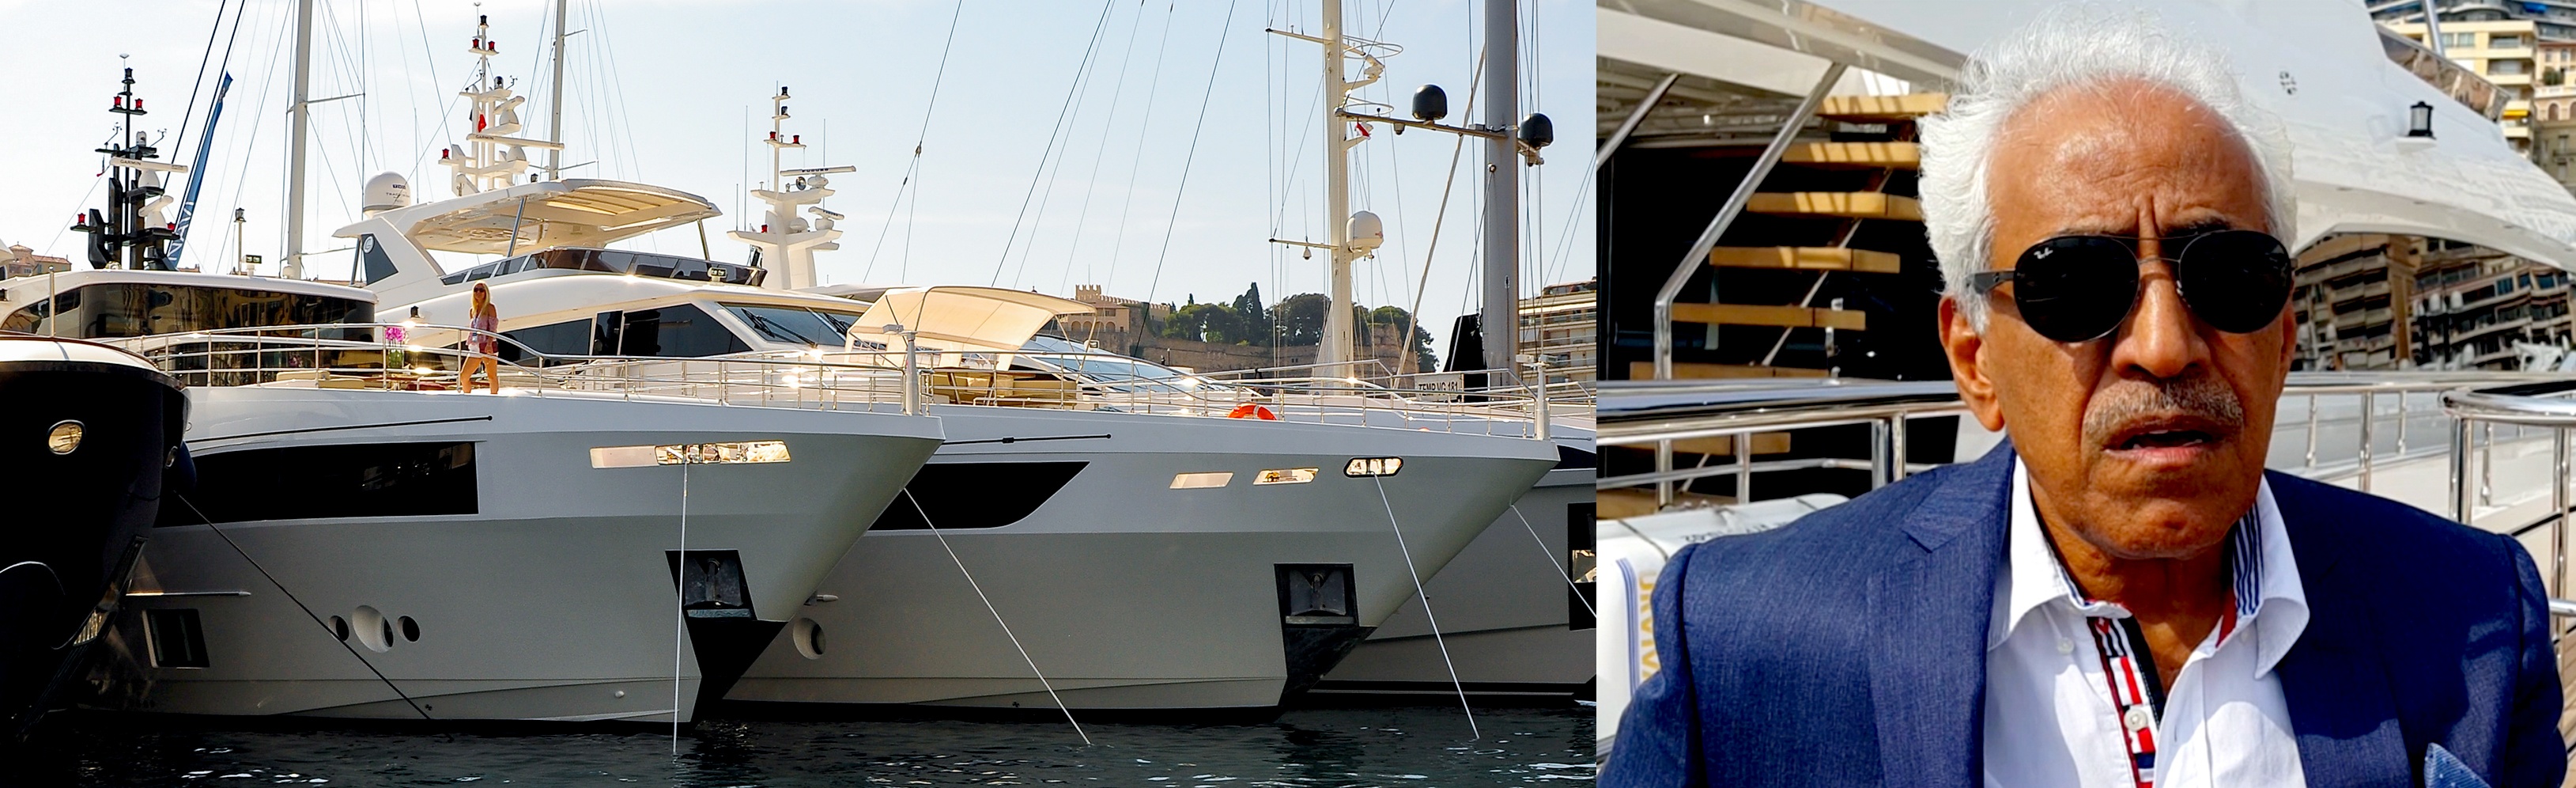 Mohammed-Alshaali,-Monaco-Yacht-Show.jpg